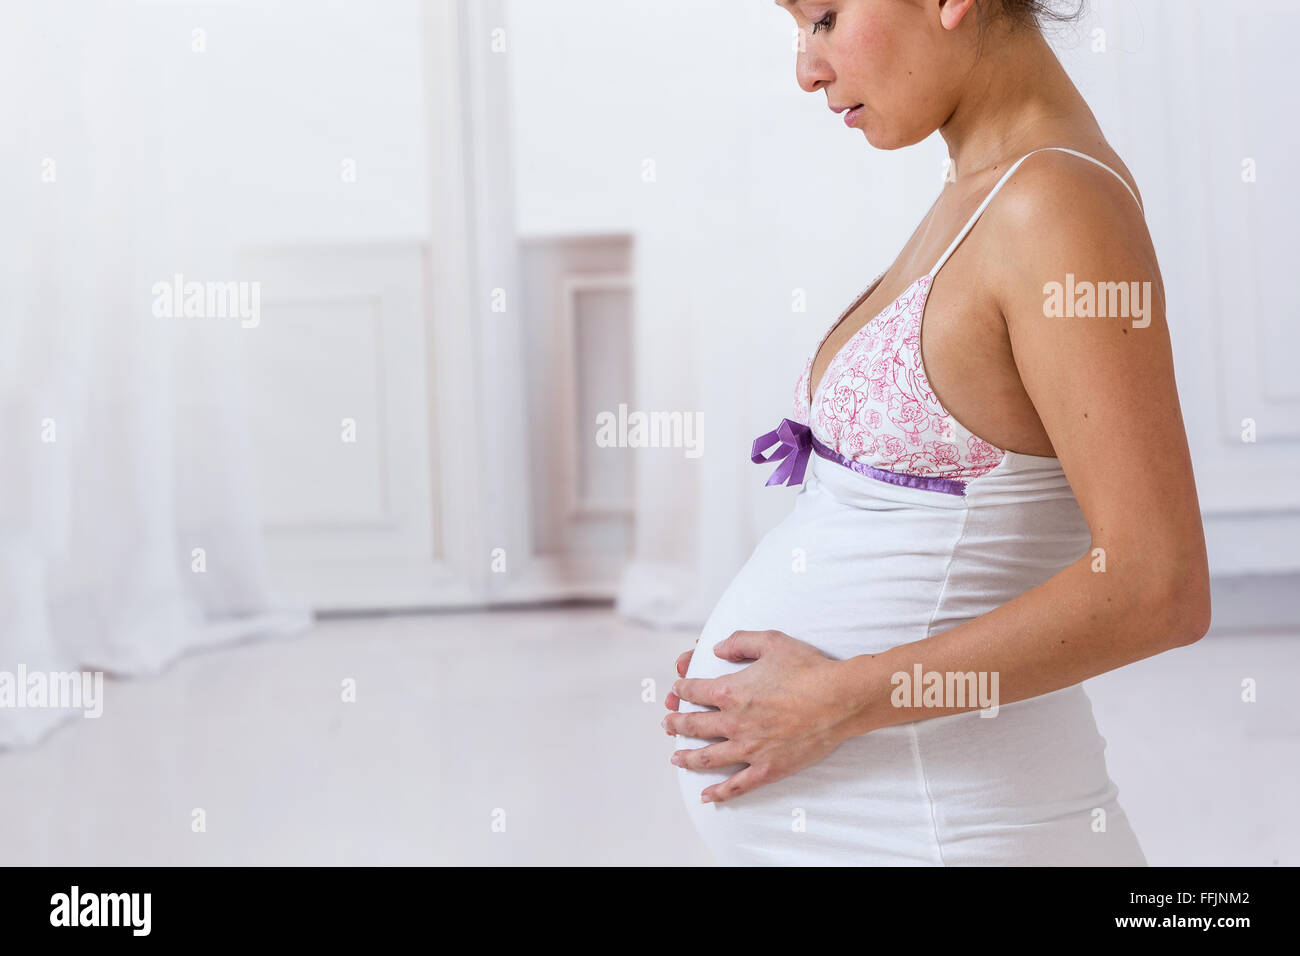 Asia pregnant woman Stock Photo